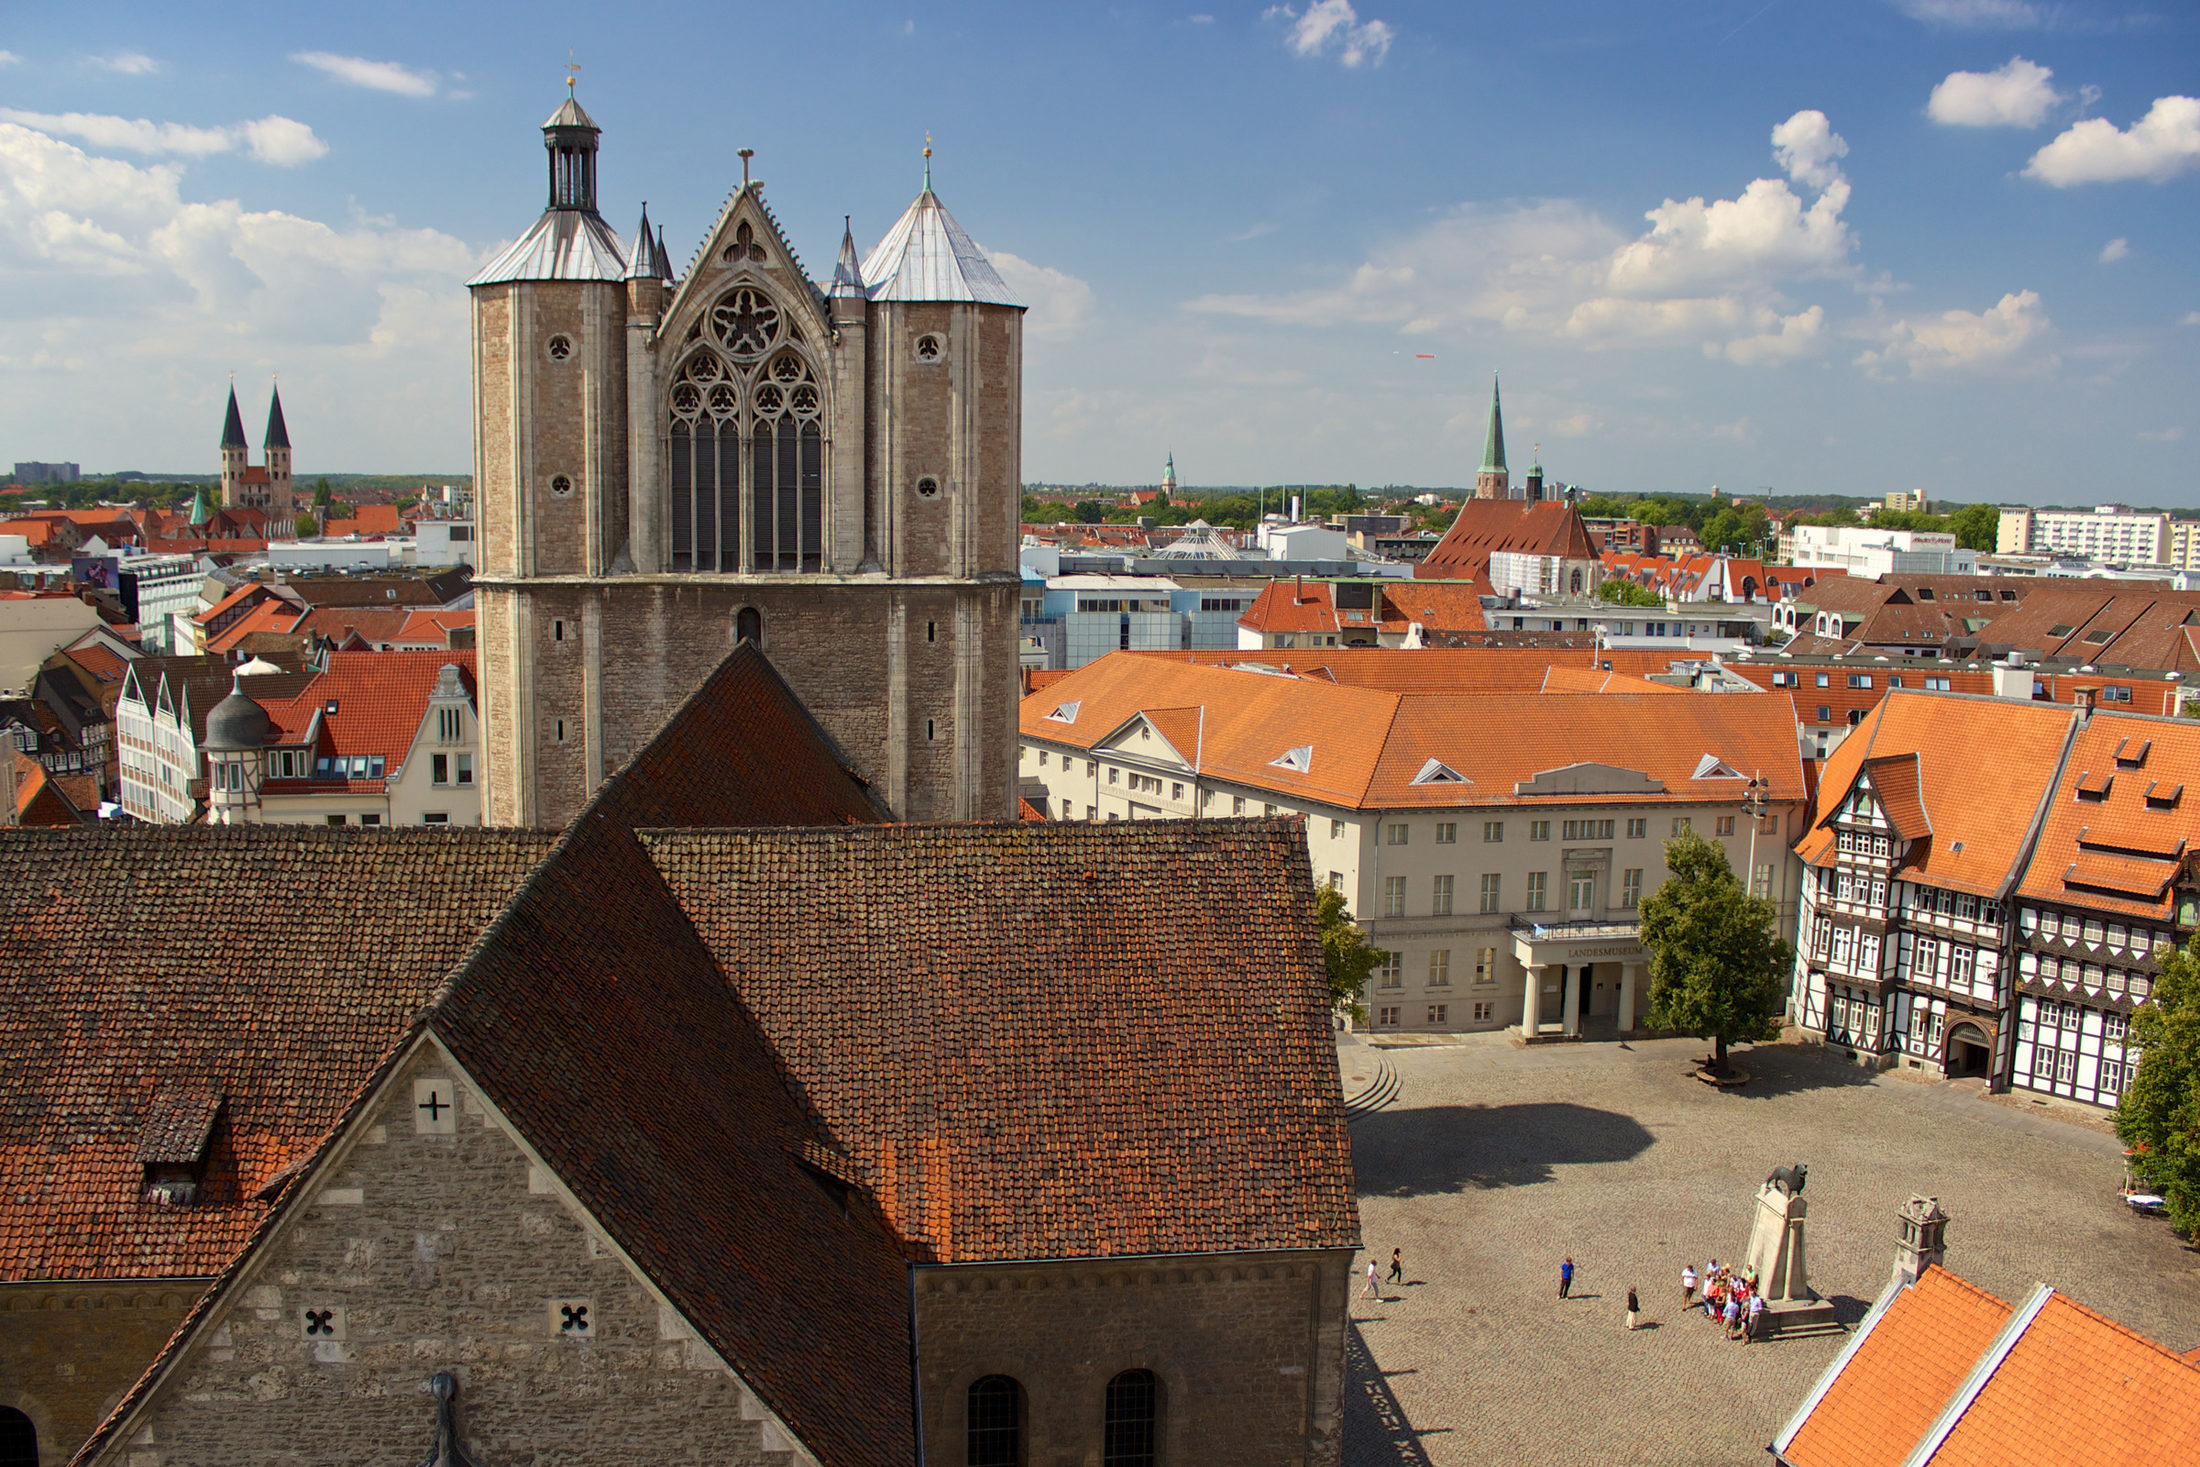 Dom und Burgplatz vom Rathausturm aus gesehen